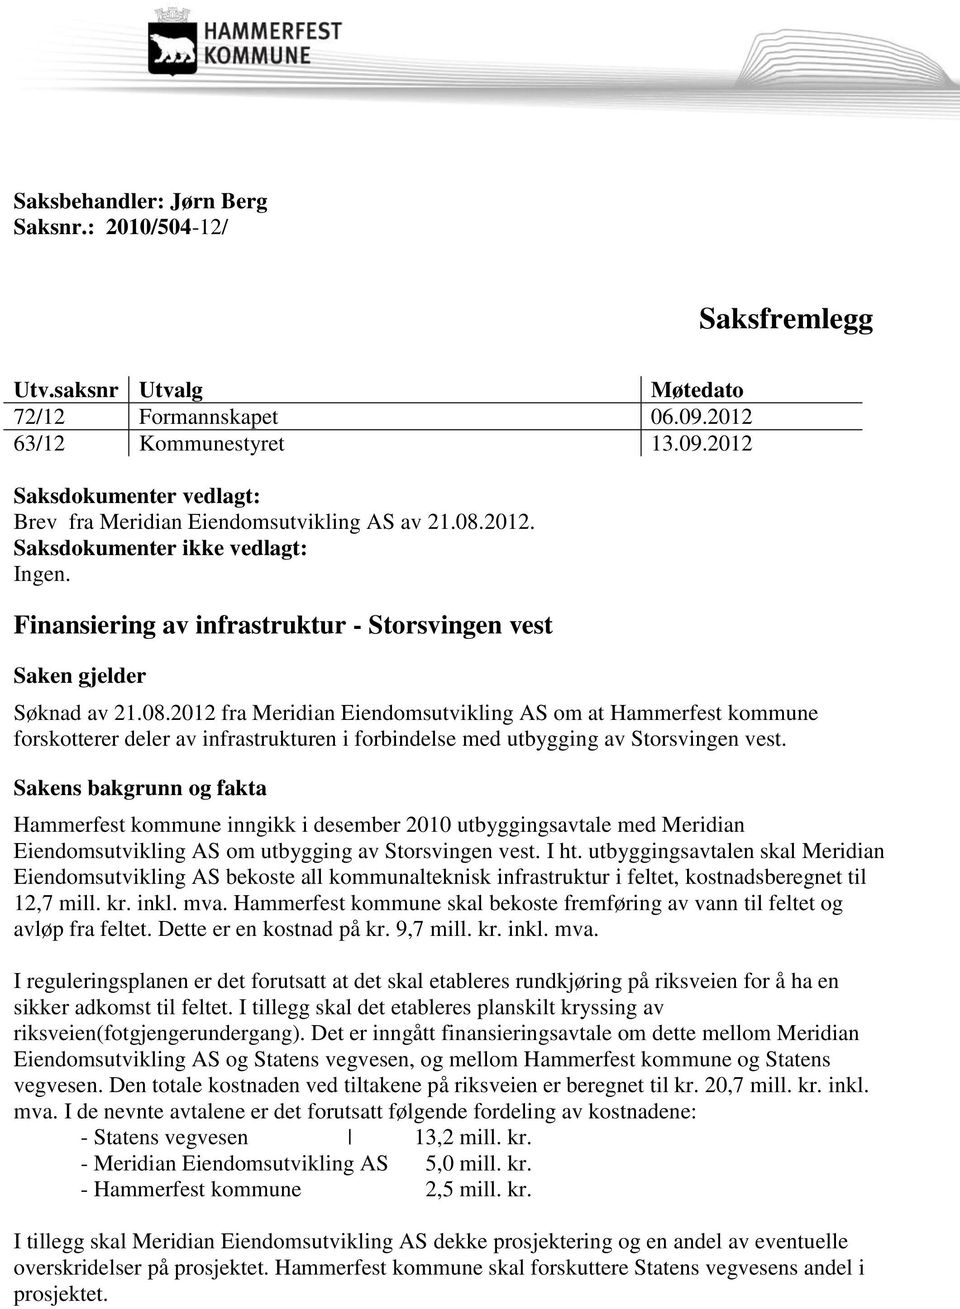 Sakens bakgrunn og fakta Hammerfest kommune inngikk i desember 2010 utbyggingsavtale med Meridian Eiendomsutvikling AS om utbygging av Storsvingen vest. I ht.